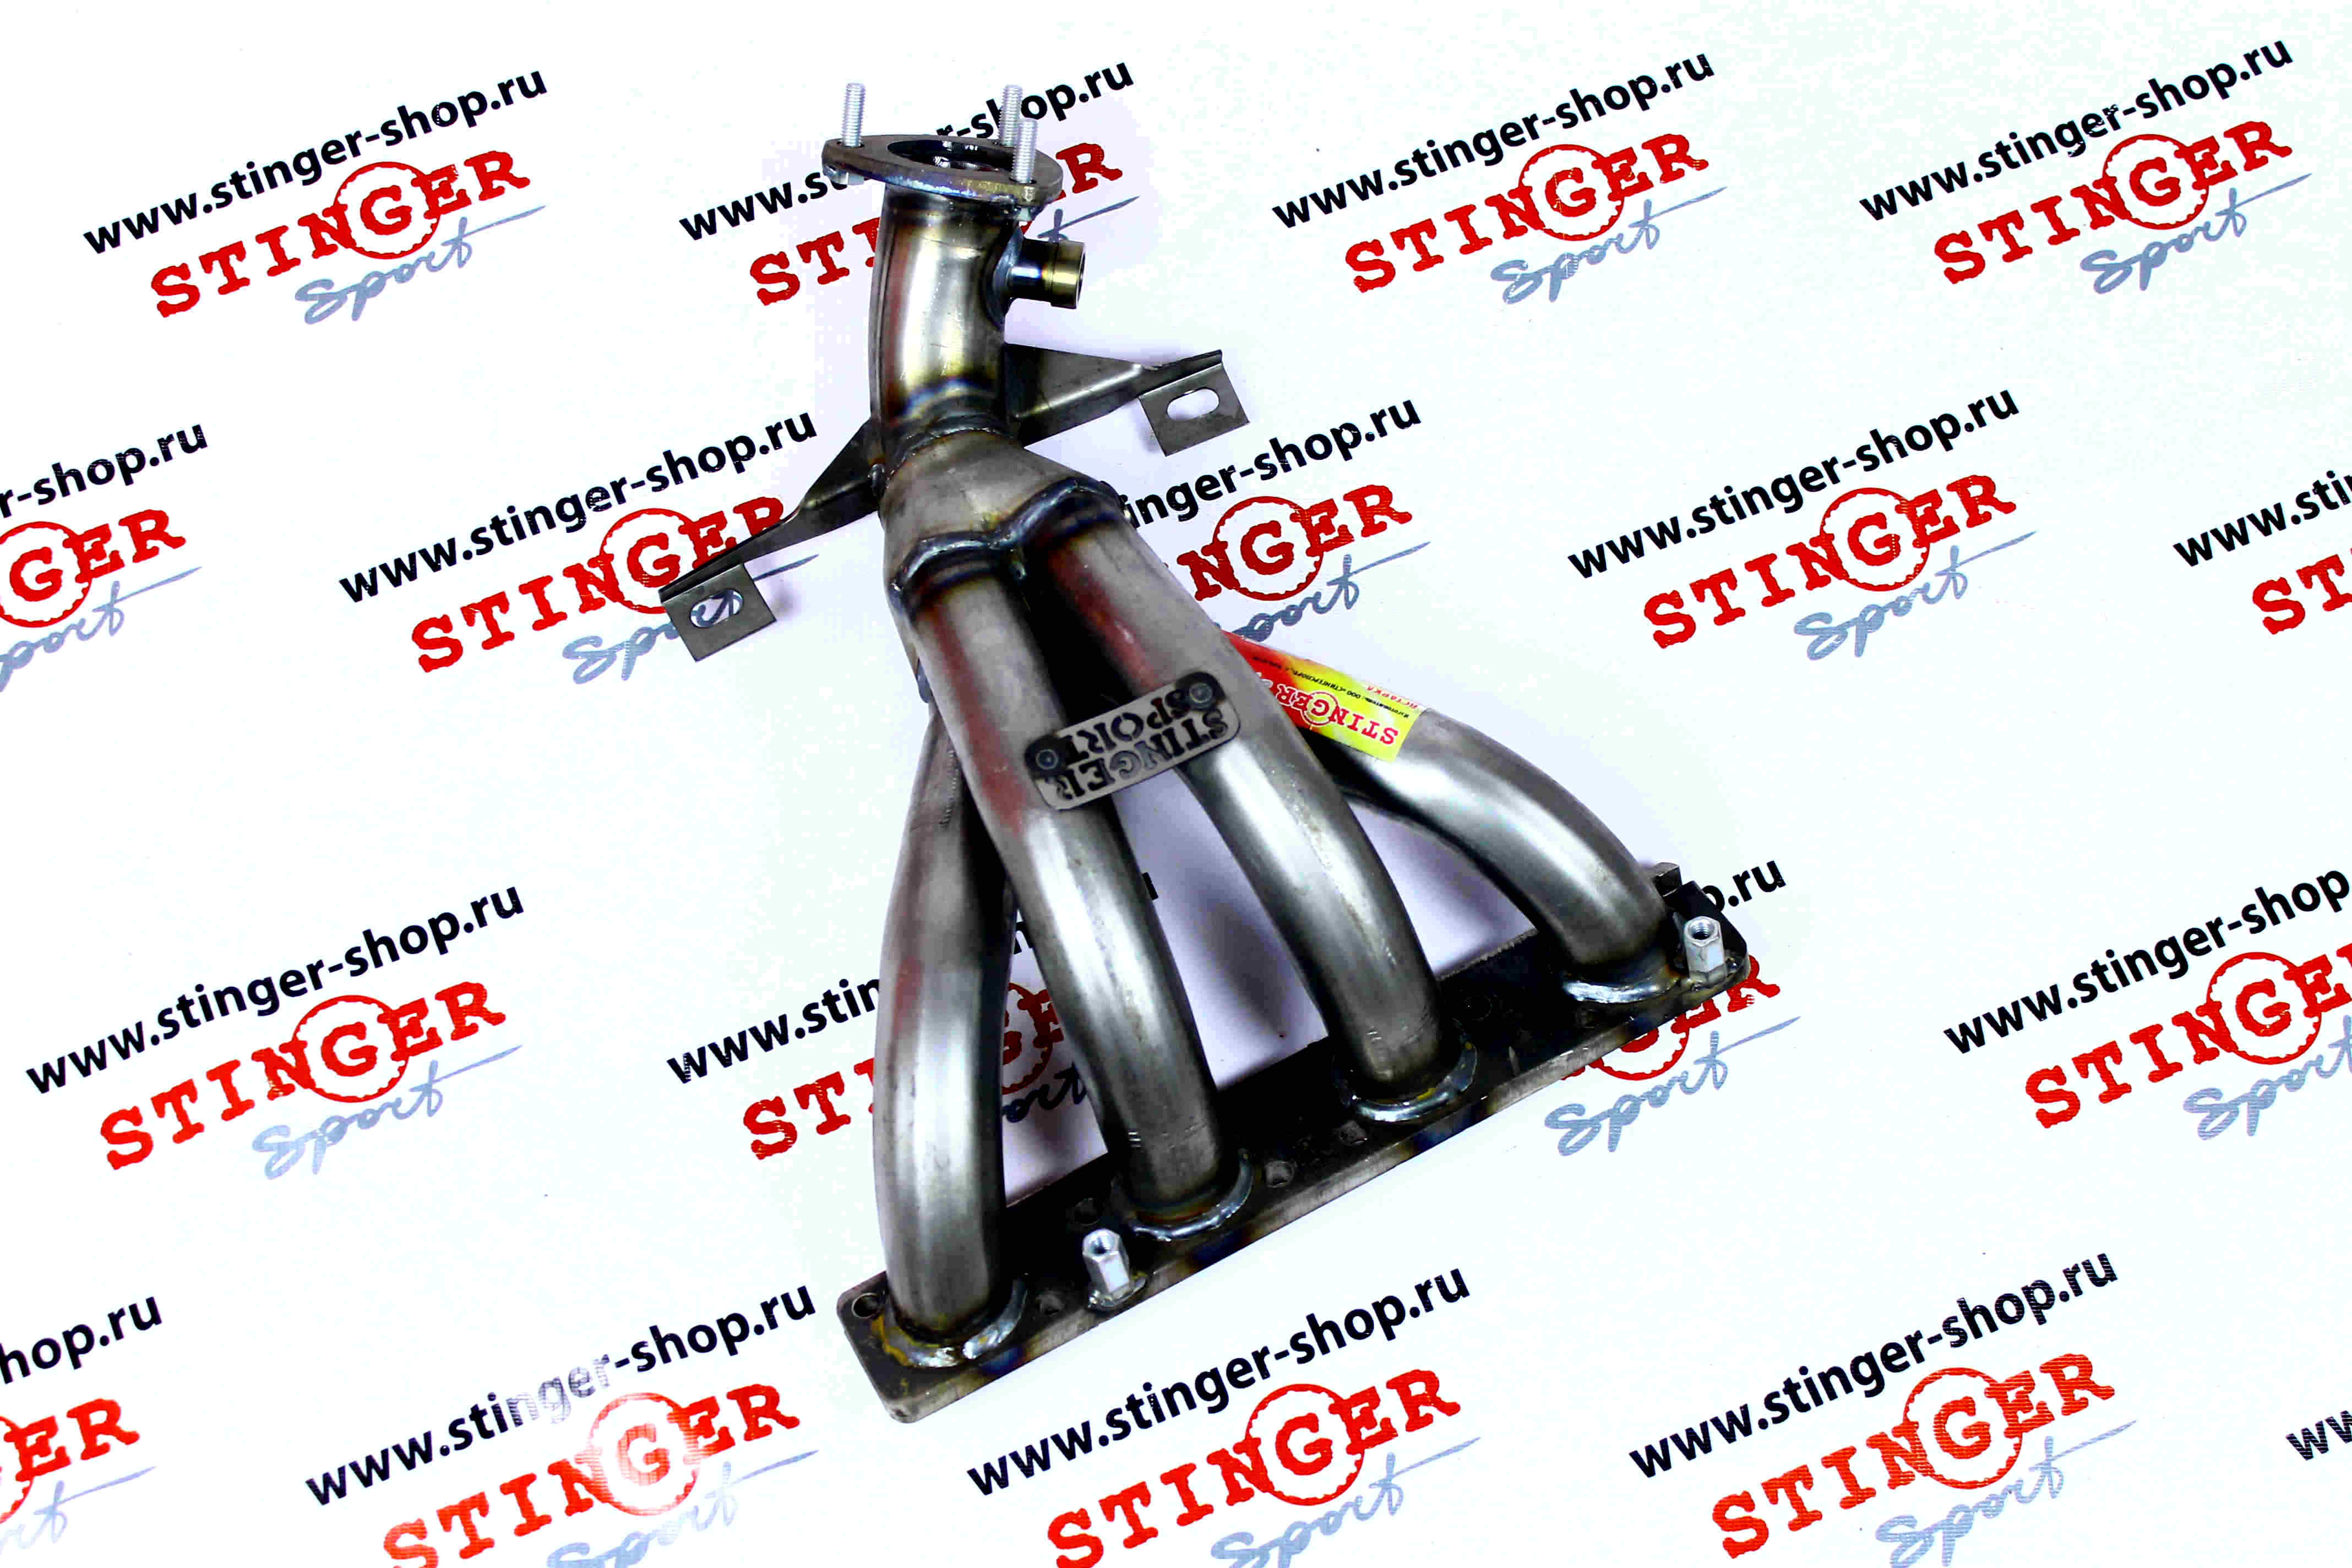 Вставка для замены катализатора "Stinger Sport" 4-1 16V 1.8L ВАЗ 2180 Веста (два датчика кислорода)